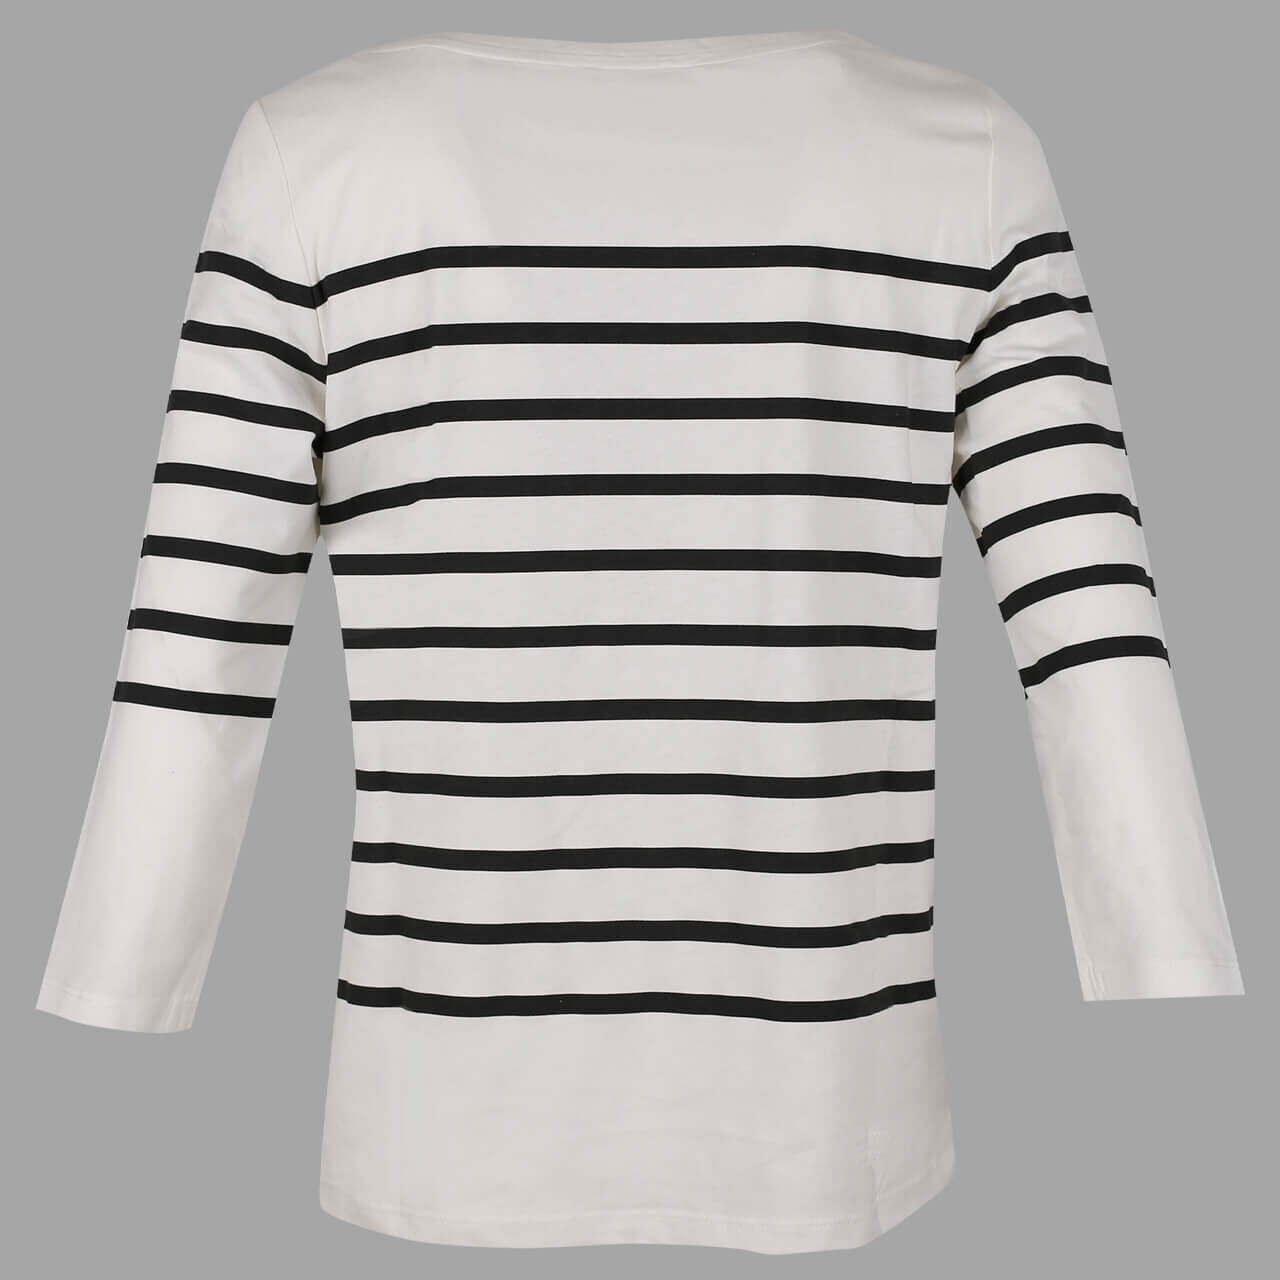 Street One Printed Stripe 3/4 Arm Shirt für Damen in Weiß gestreift, FarbNr.: 20108